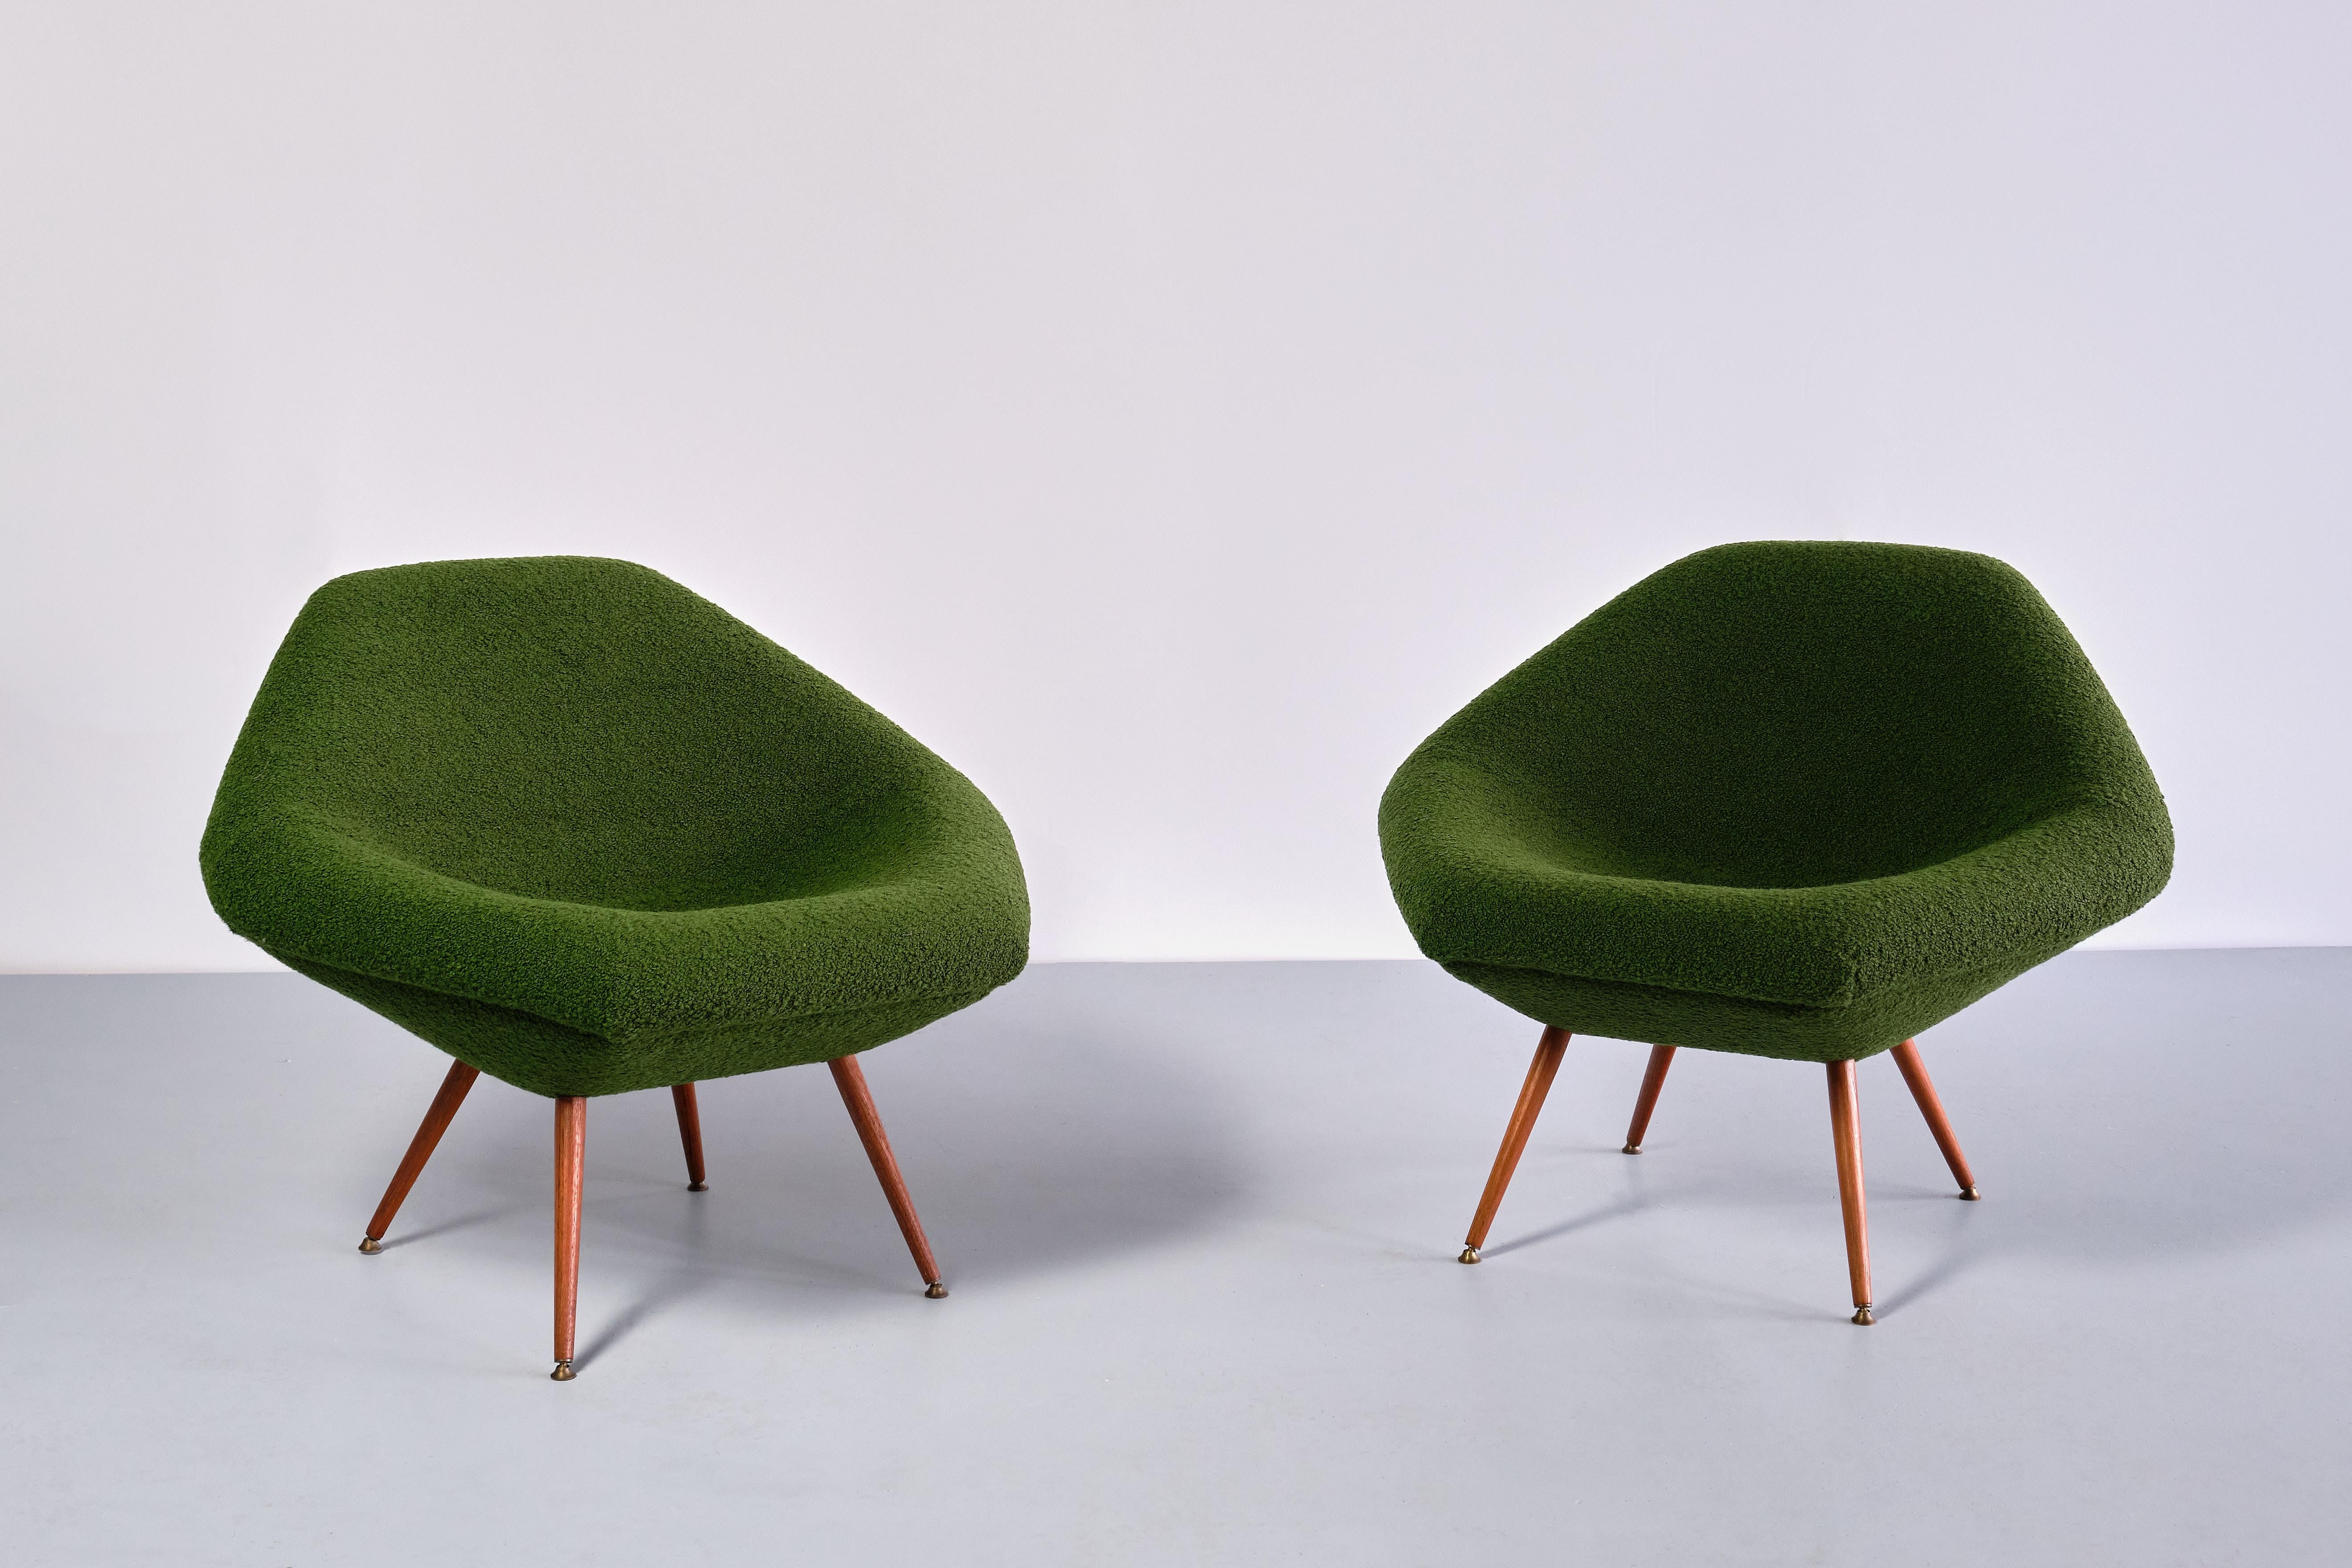 Dieses seltene Paar Loungesessel wurde von Arne Dahlén in den frühen 1960er Jahren entworfen. Das Modell hieß 